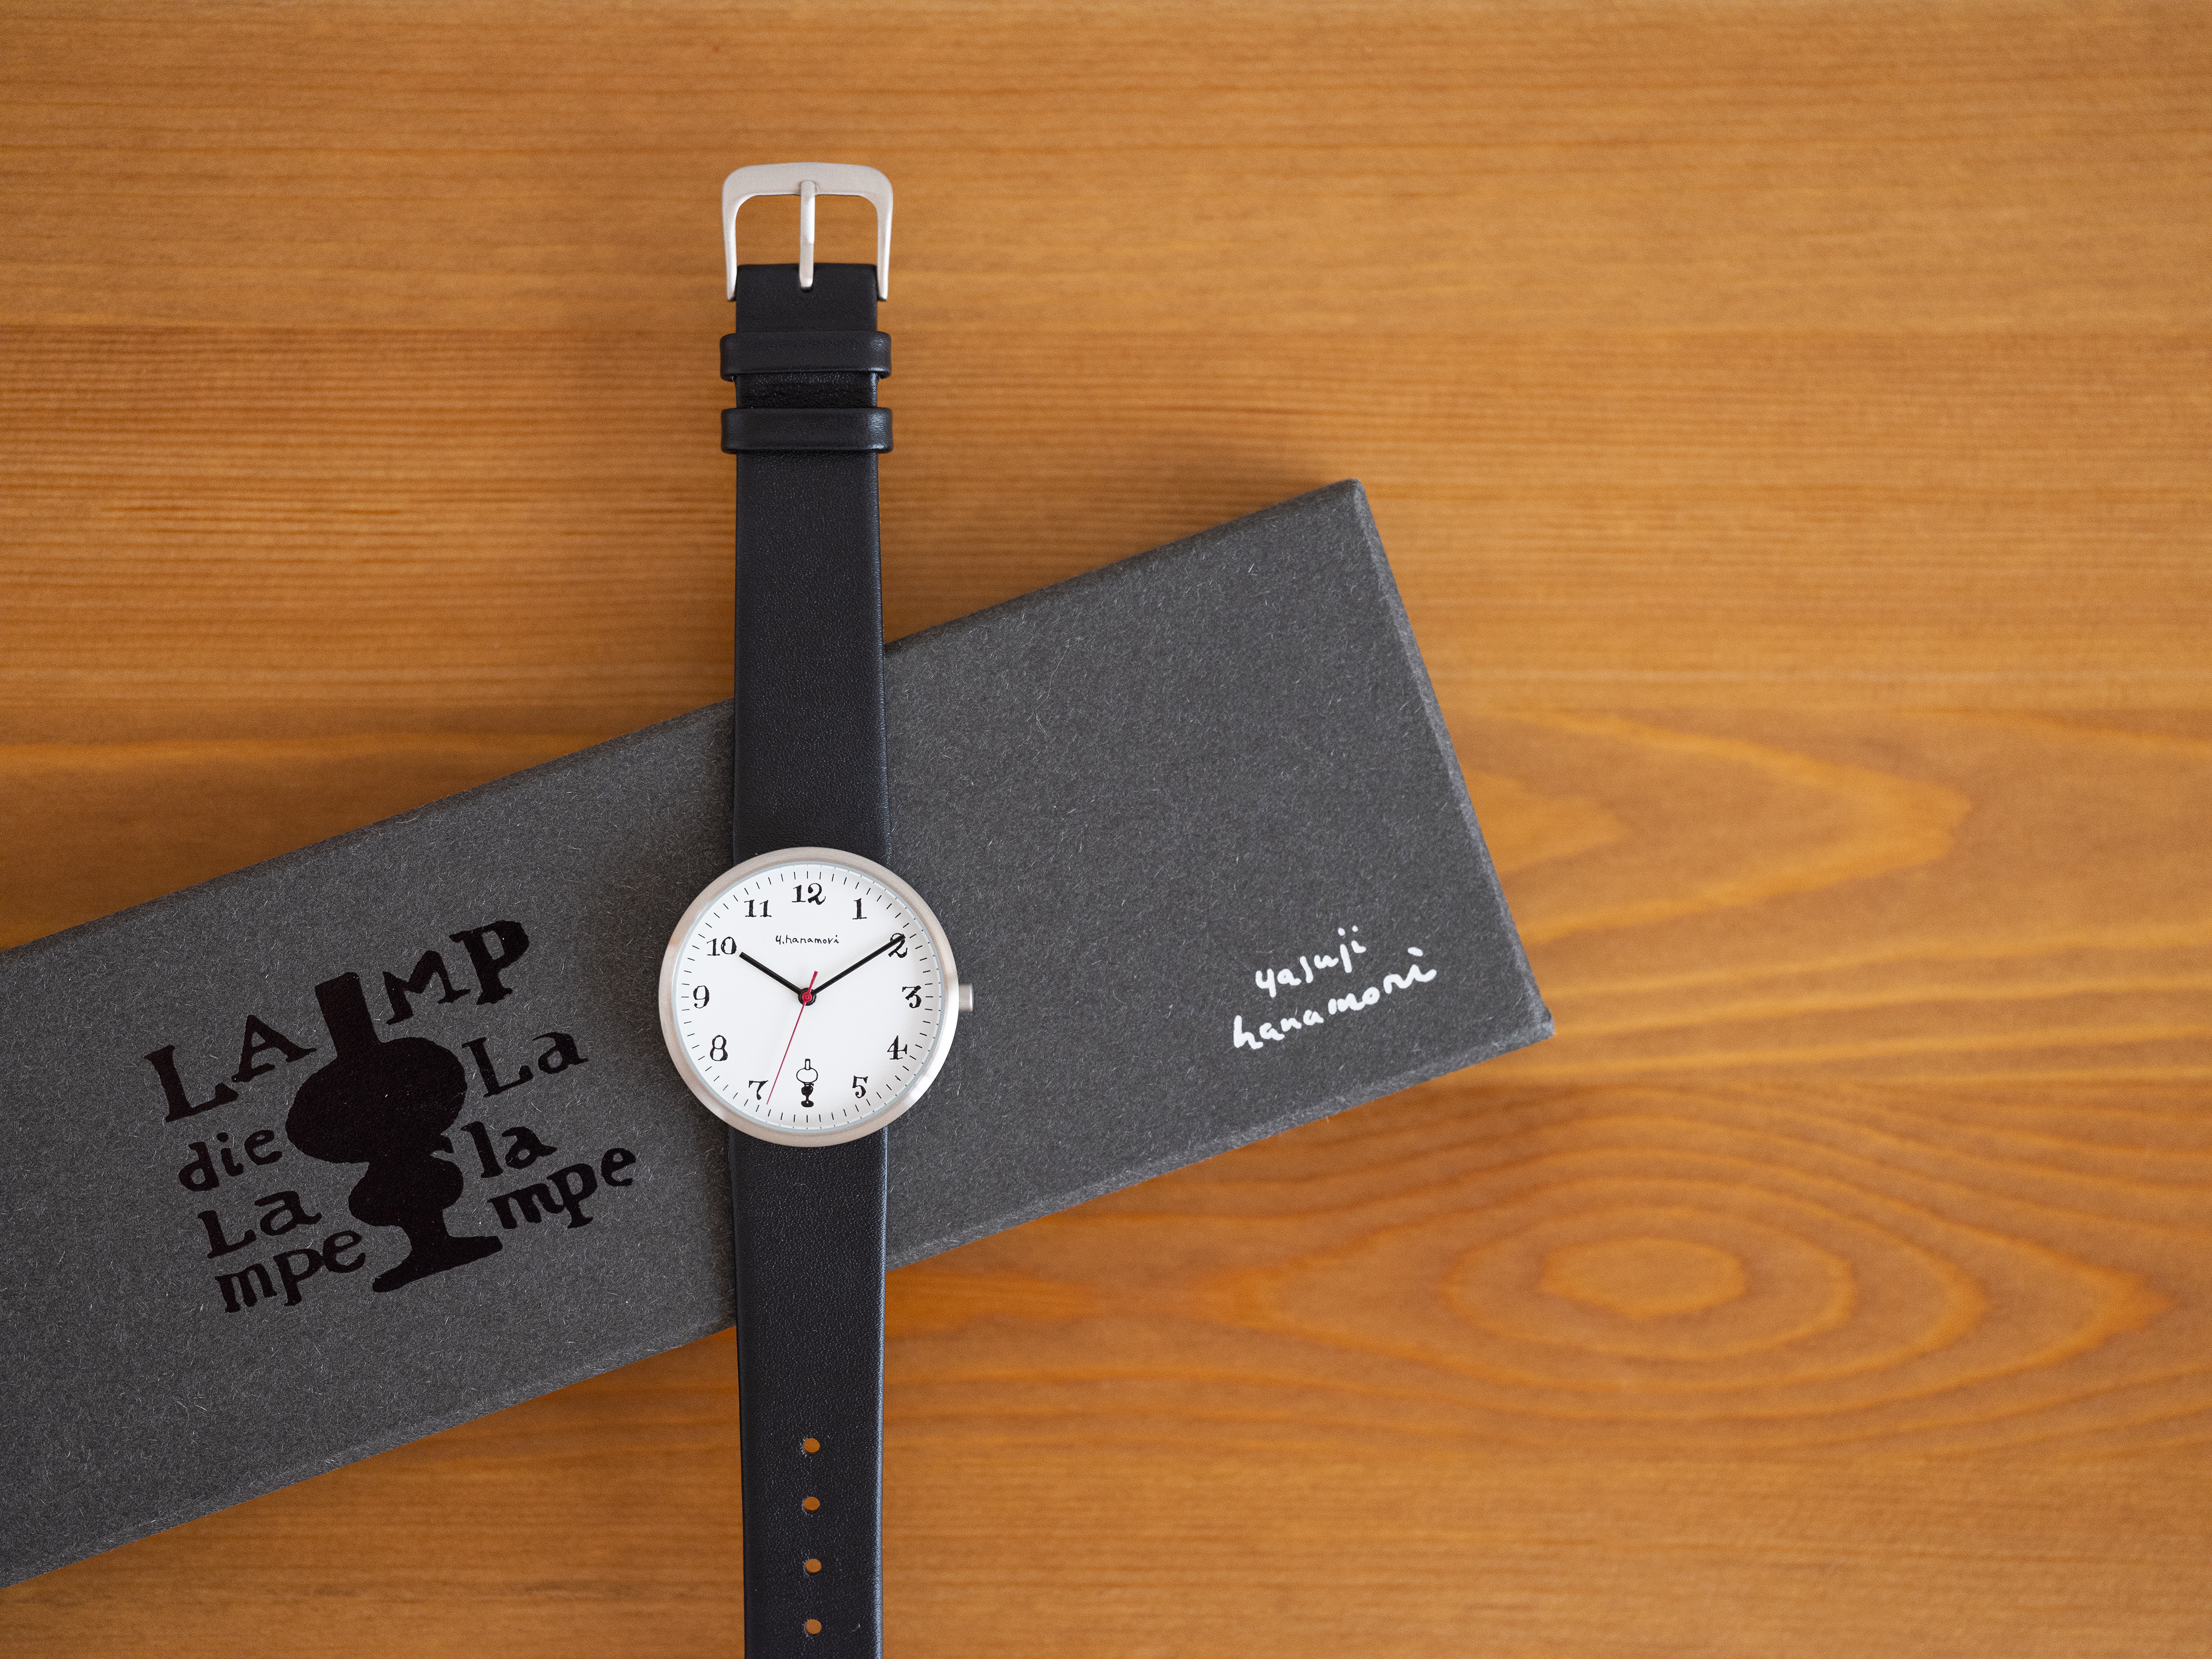 暮しの手帖 花森安治のオリジナル腕時計がシンプルモダンで美しい 時計のカット画を元にデザインされたんだって Pouch ポーチ